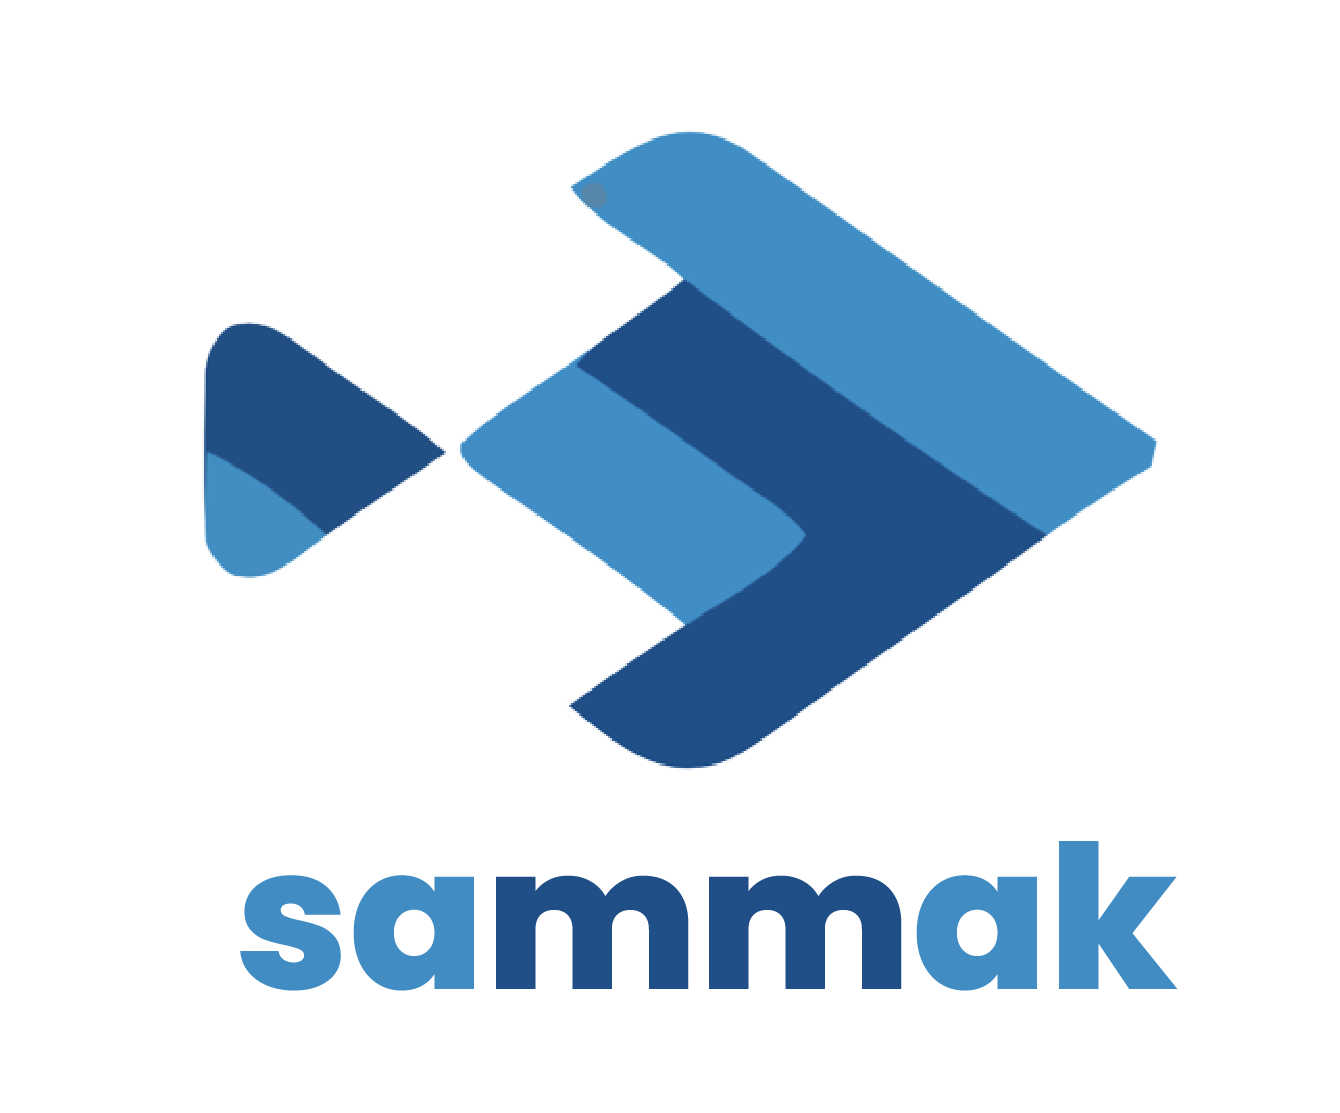 Sammak Company Ltd.